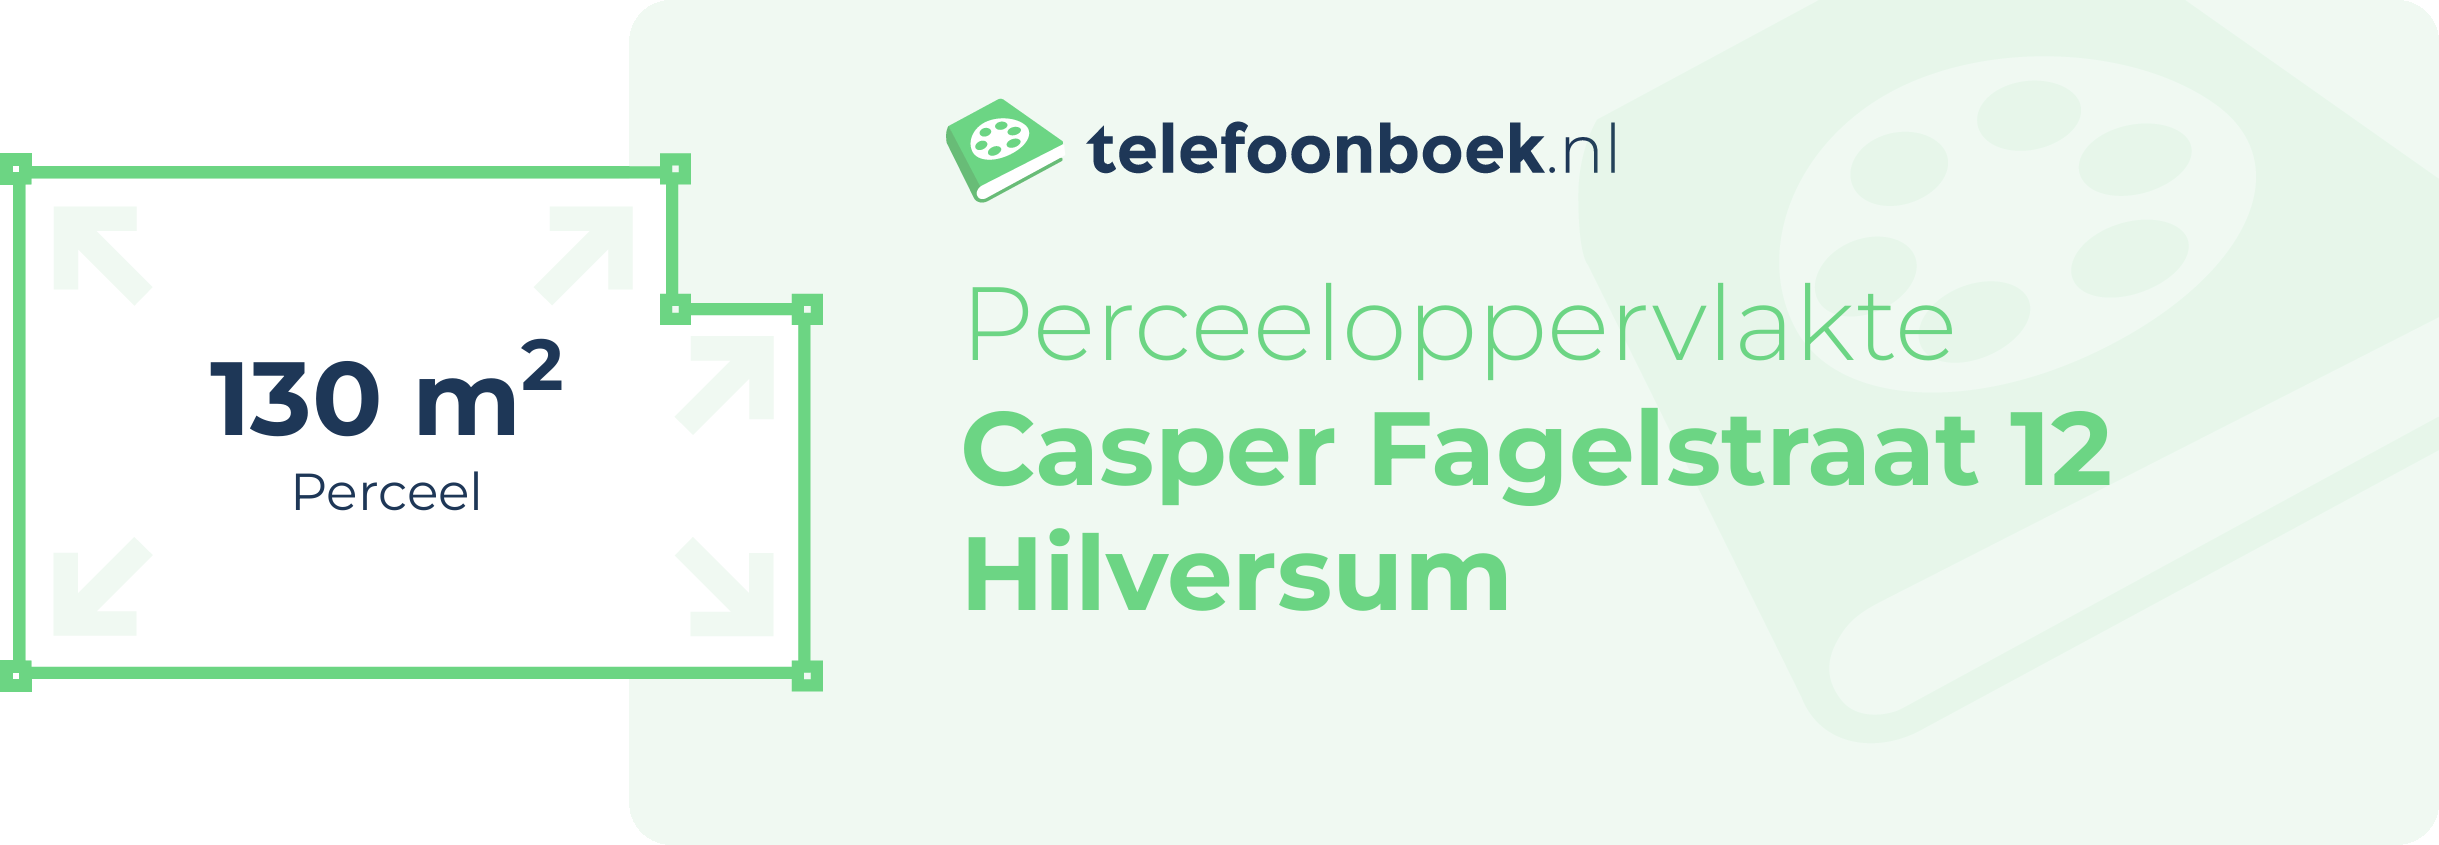 Perceeloppervlakte Casper Fagelstraat 12 Hilversum